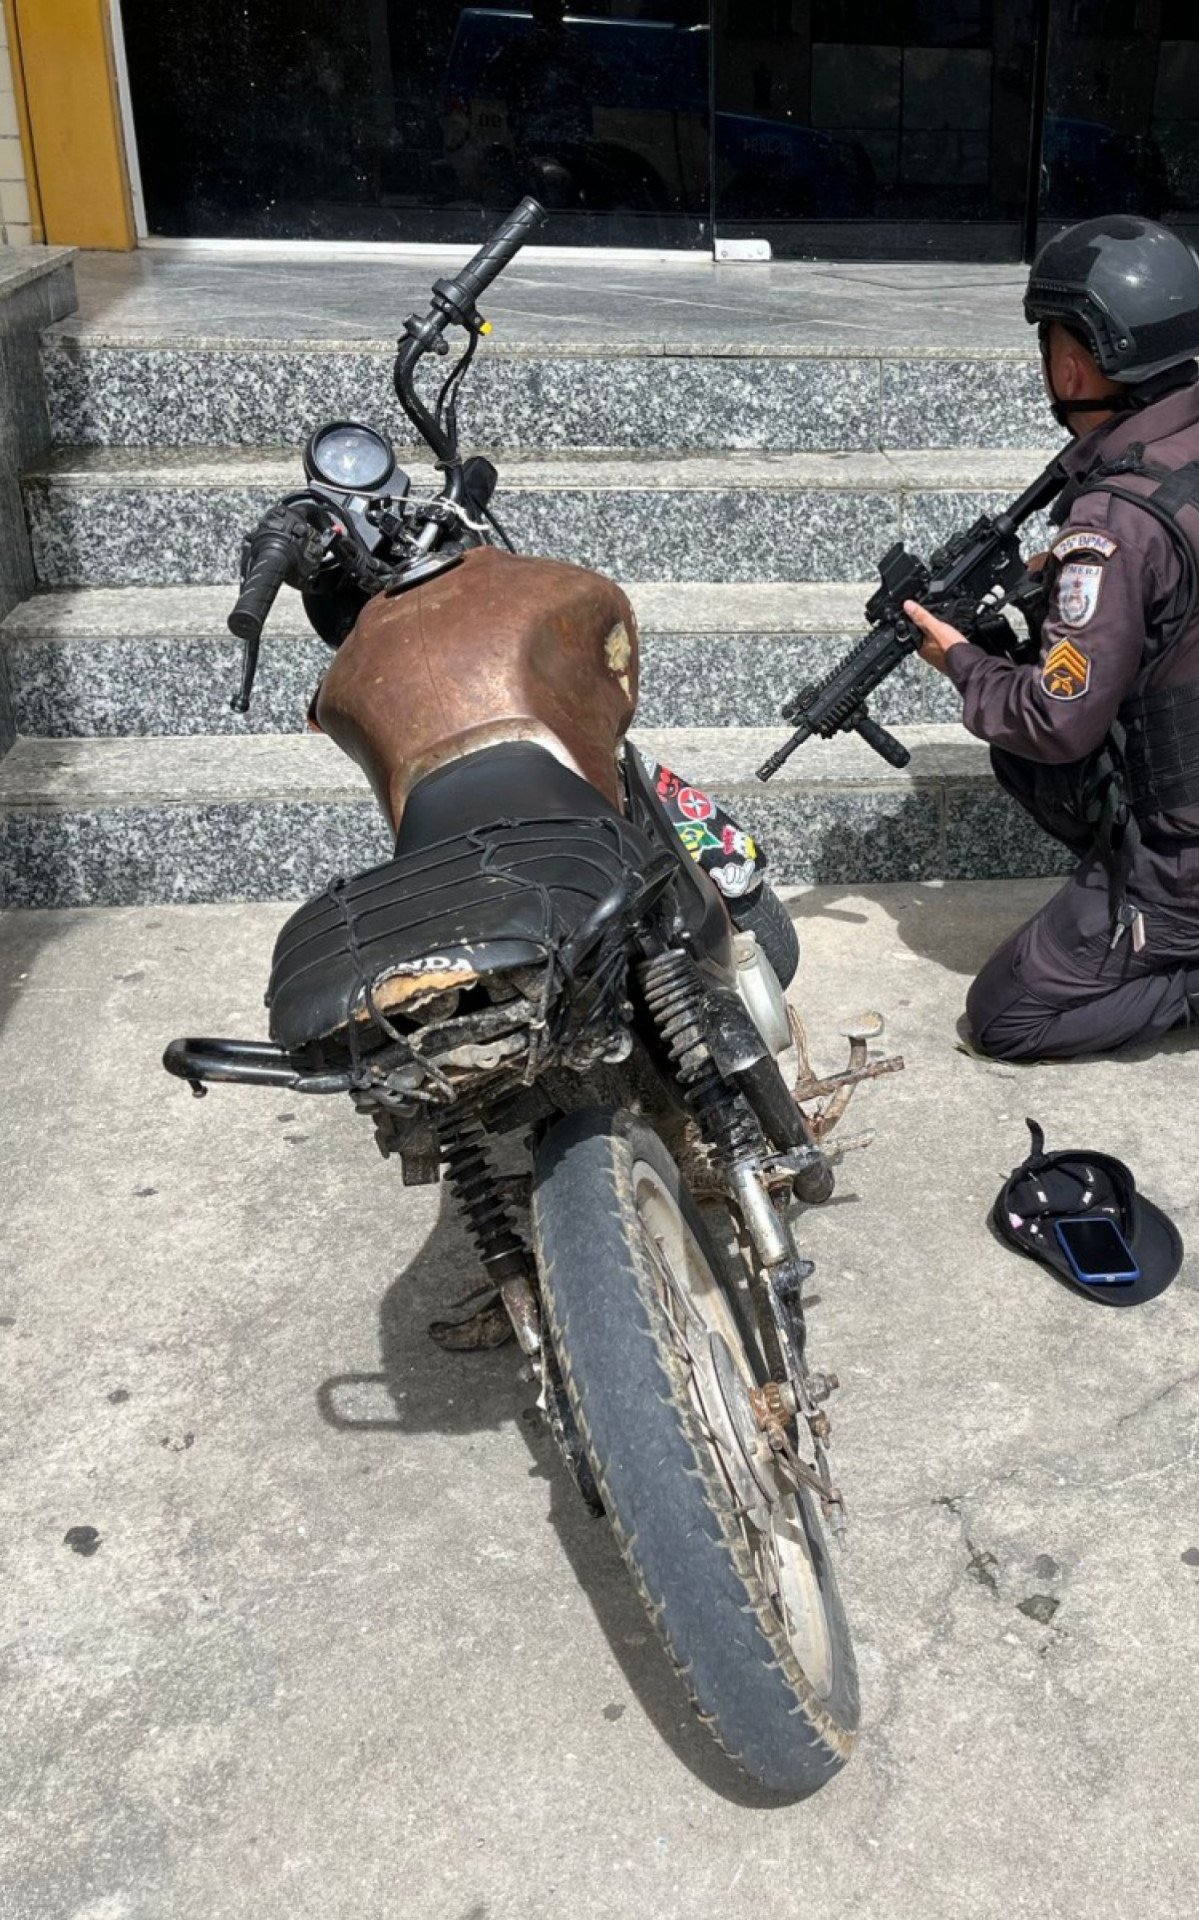 Polícia Militar prende motociclista por adulteração de sinal identificador de veículo em Araruama | Araruama